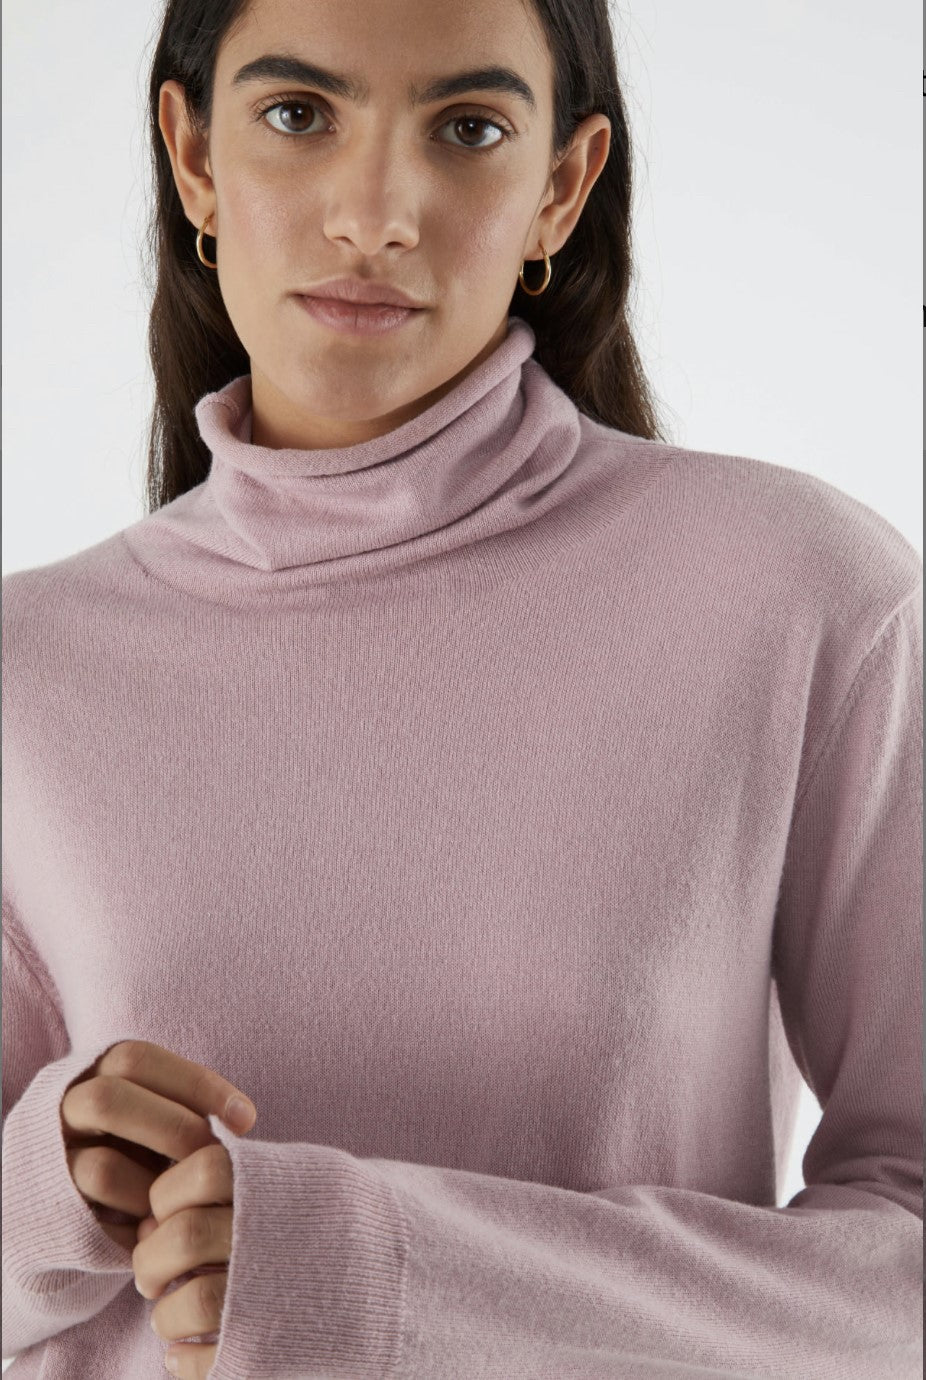 Fine Knit Turtleneck Sweaters